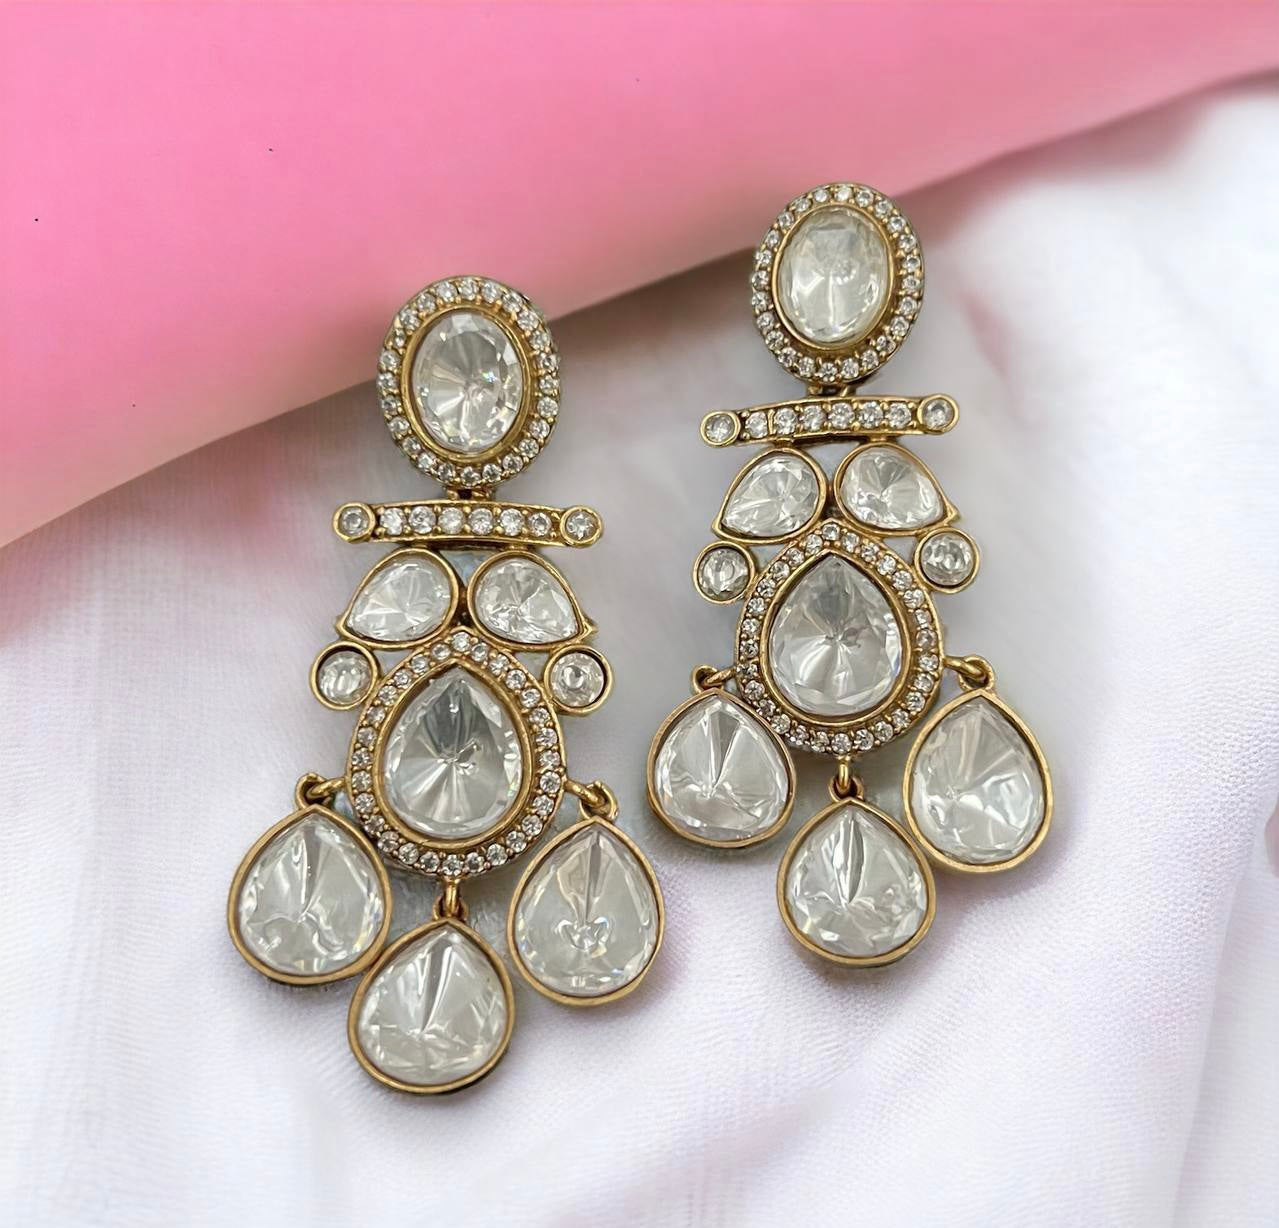 Polki Kundan earrings | Partywear earrings